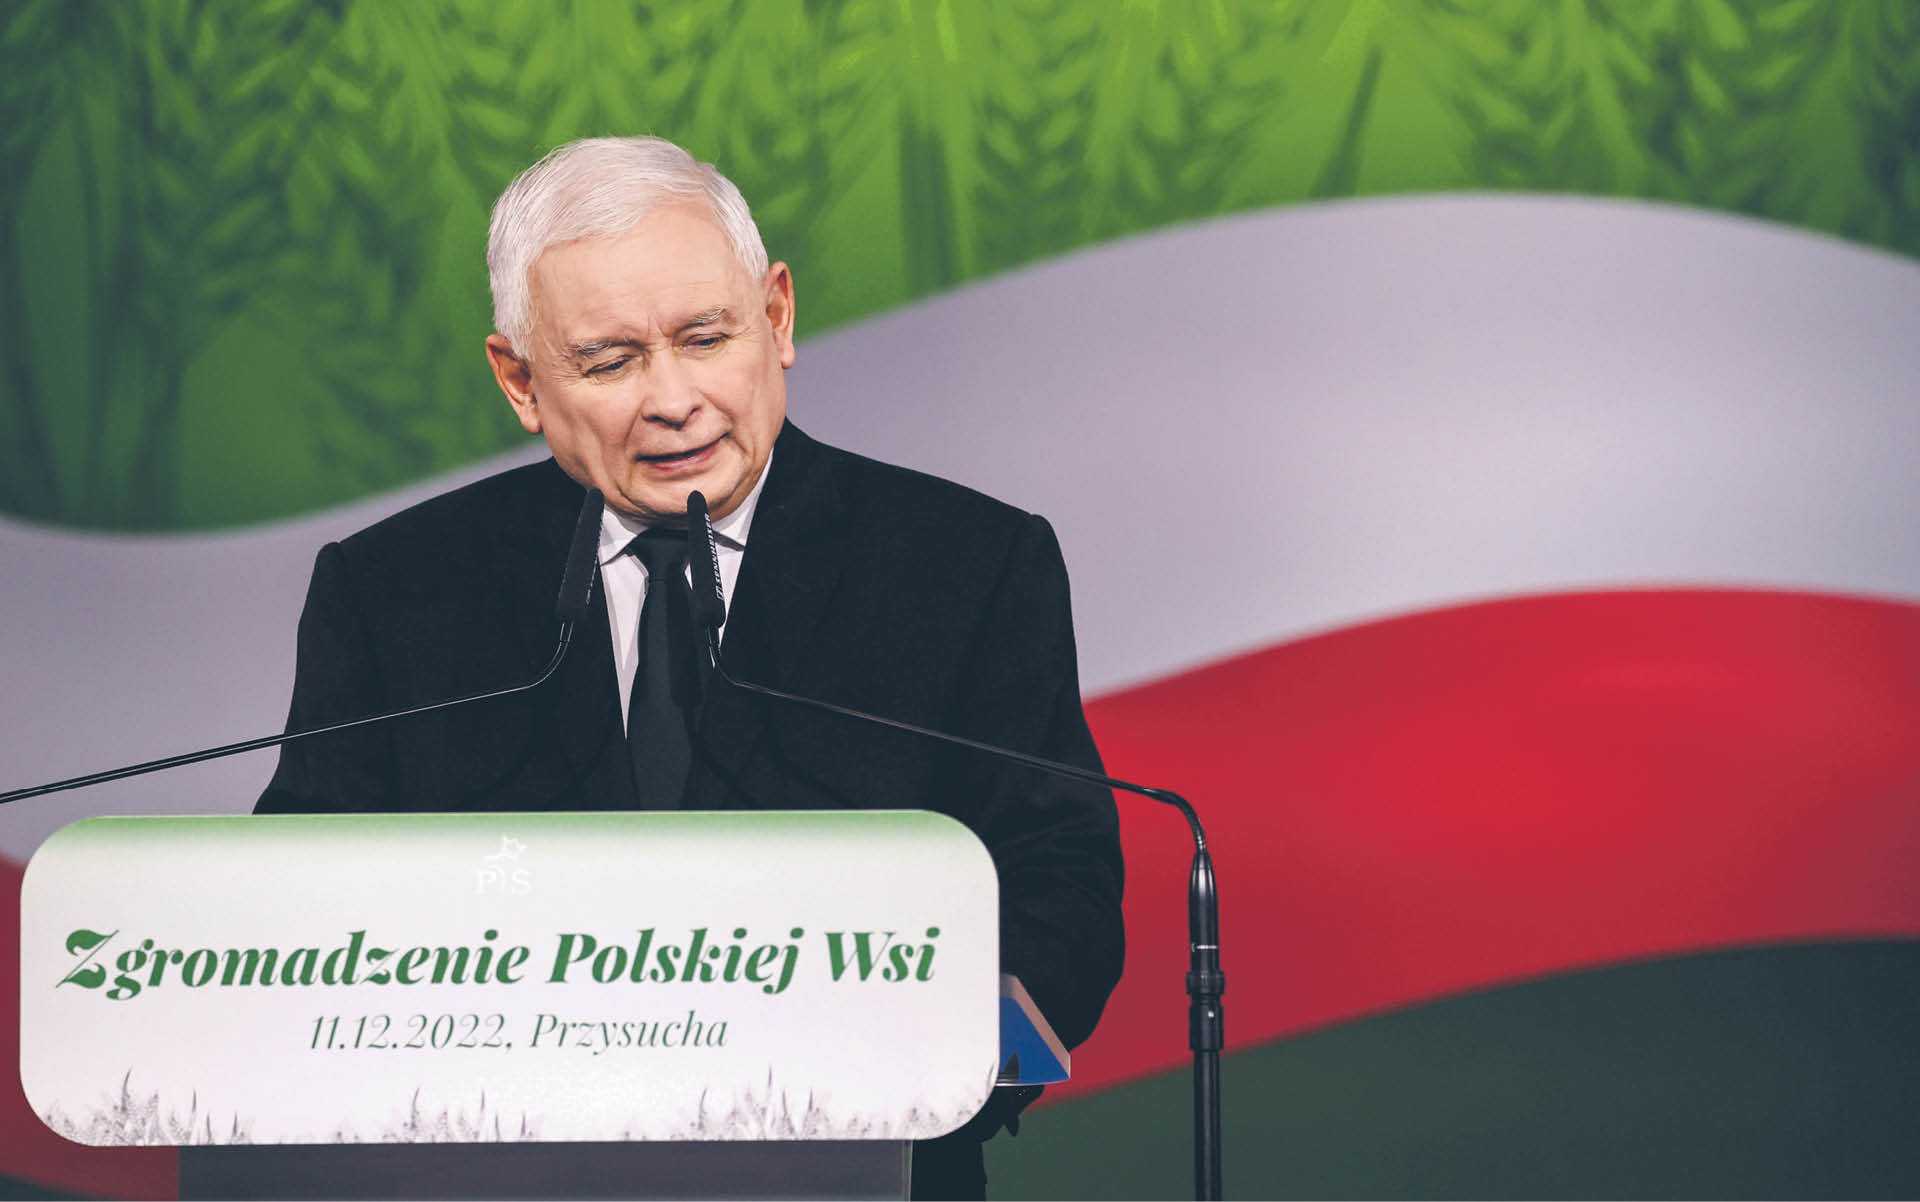 Zmiany dotyczące wyborów nie obejmą jednak ani liczby okregów, ani metody rozdzielania mandatów; na zdj. prezes PiS Jarosław Kaczyński, który kibicuje zwiększeniu liczby komisji